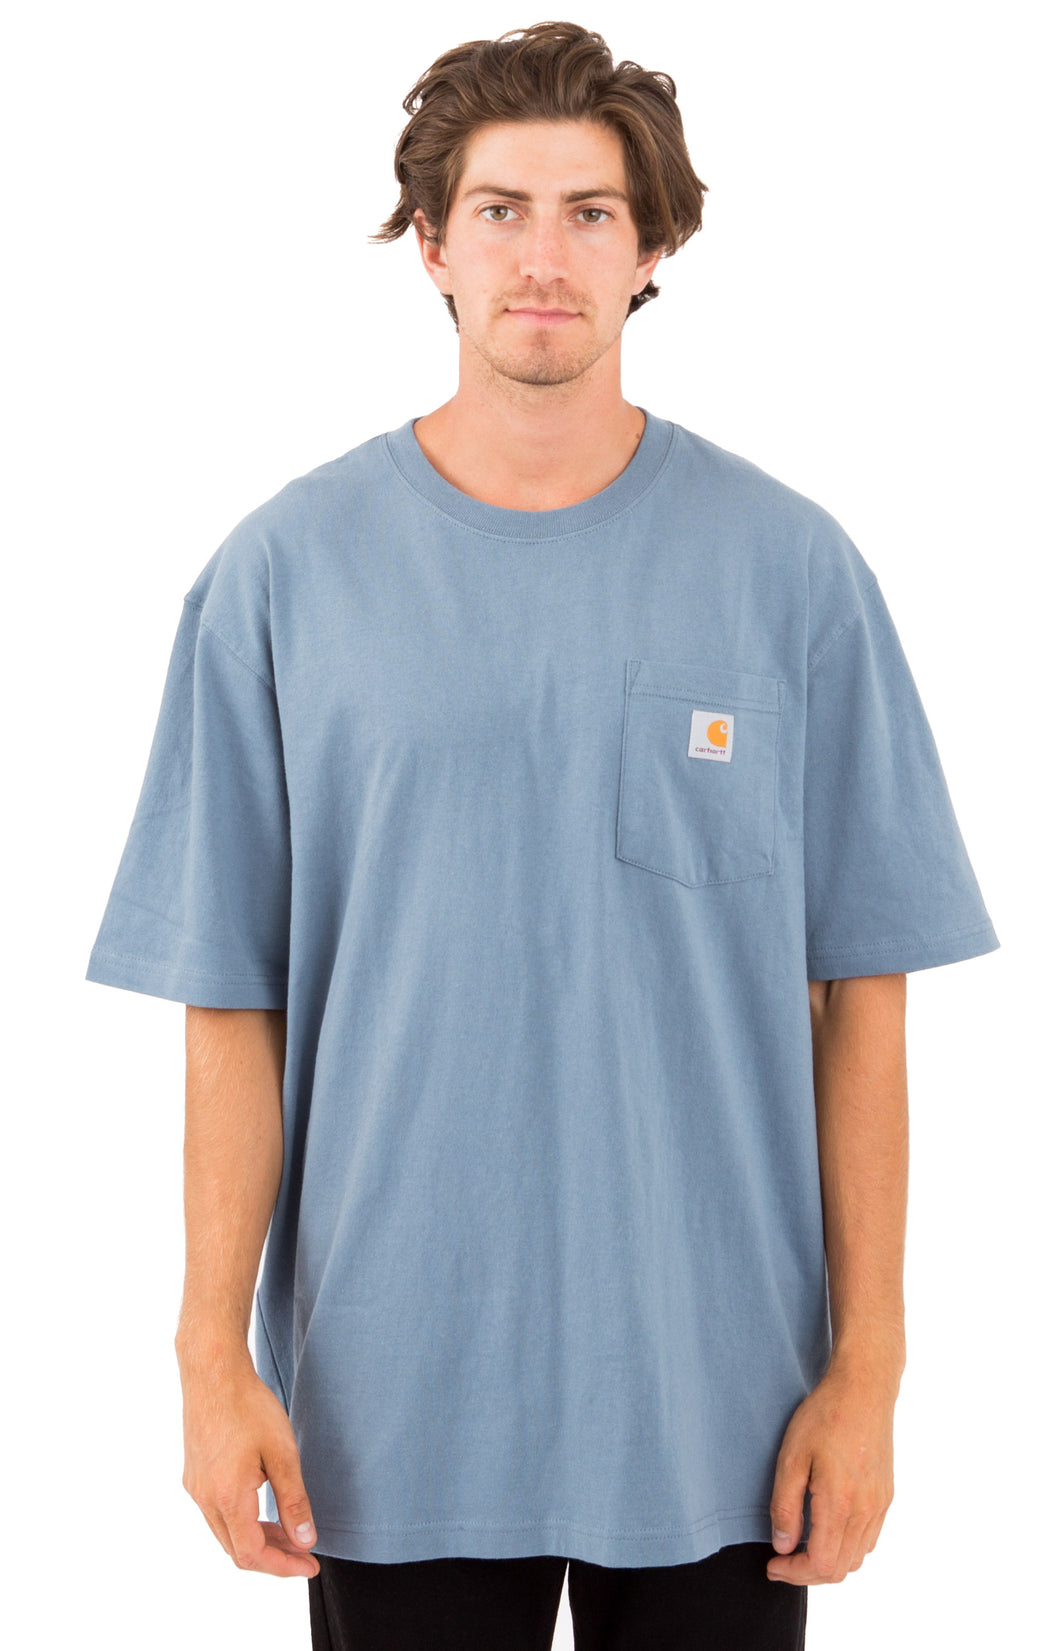 Carhartt K87 Workwear Pocket T-Shirt (Steel Blue - 437)(Oversized fit)